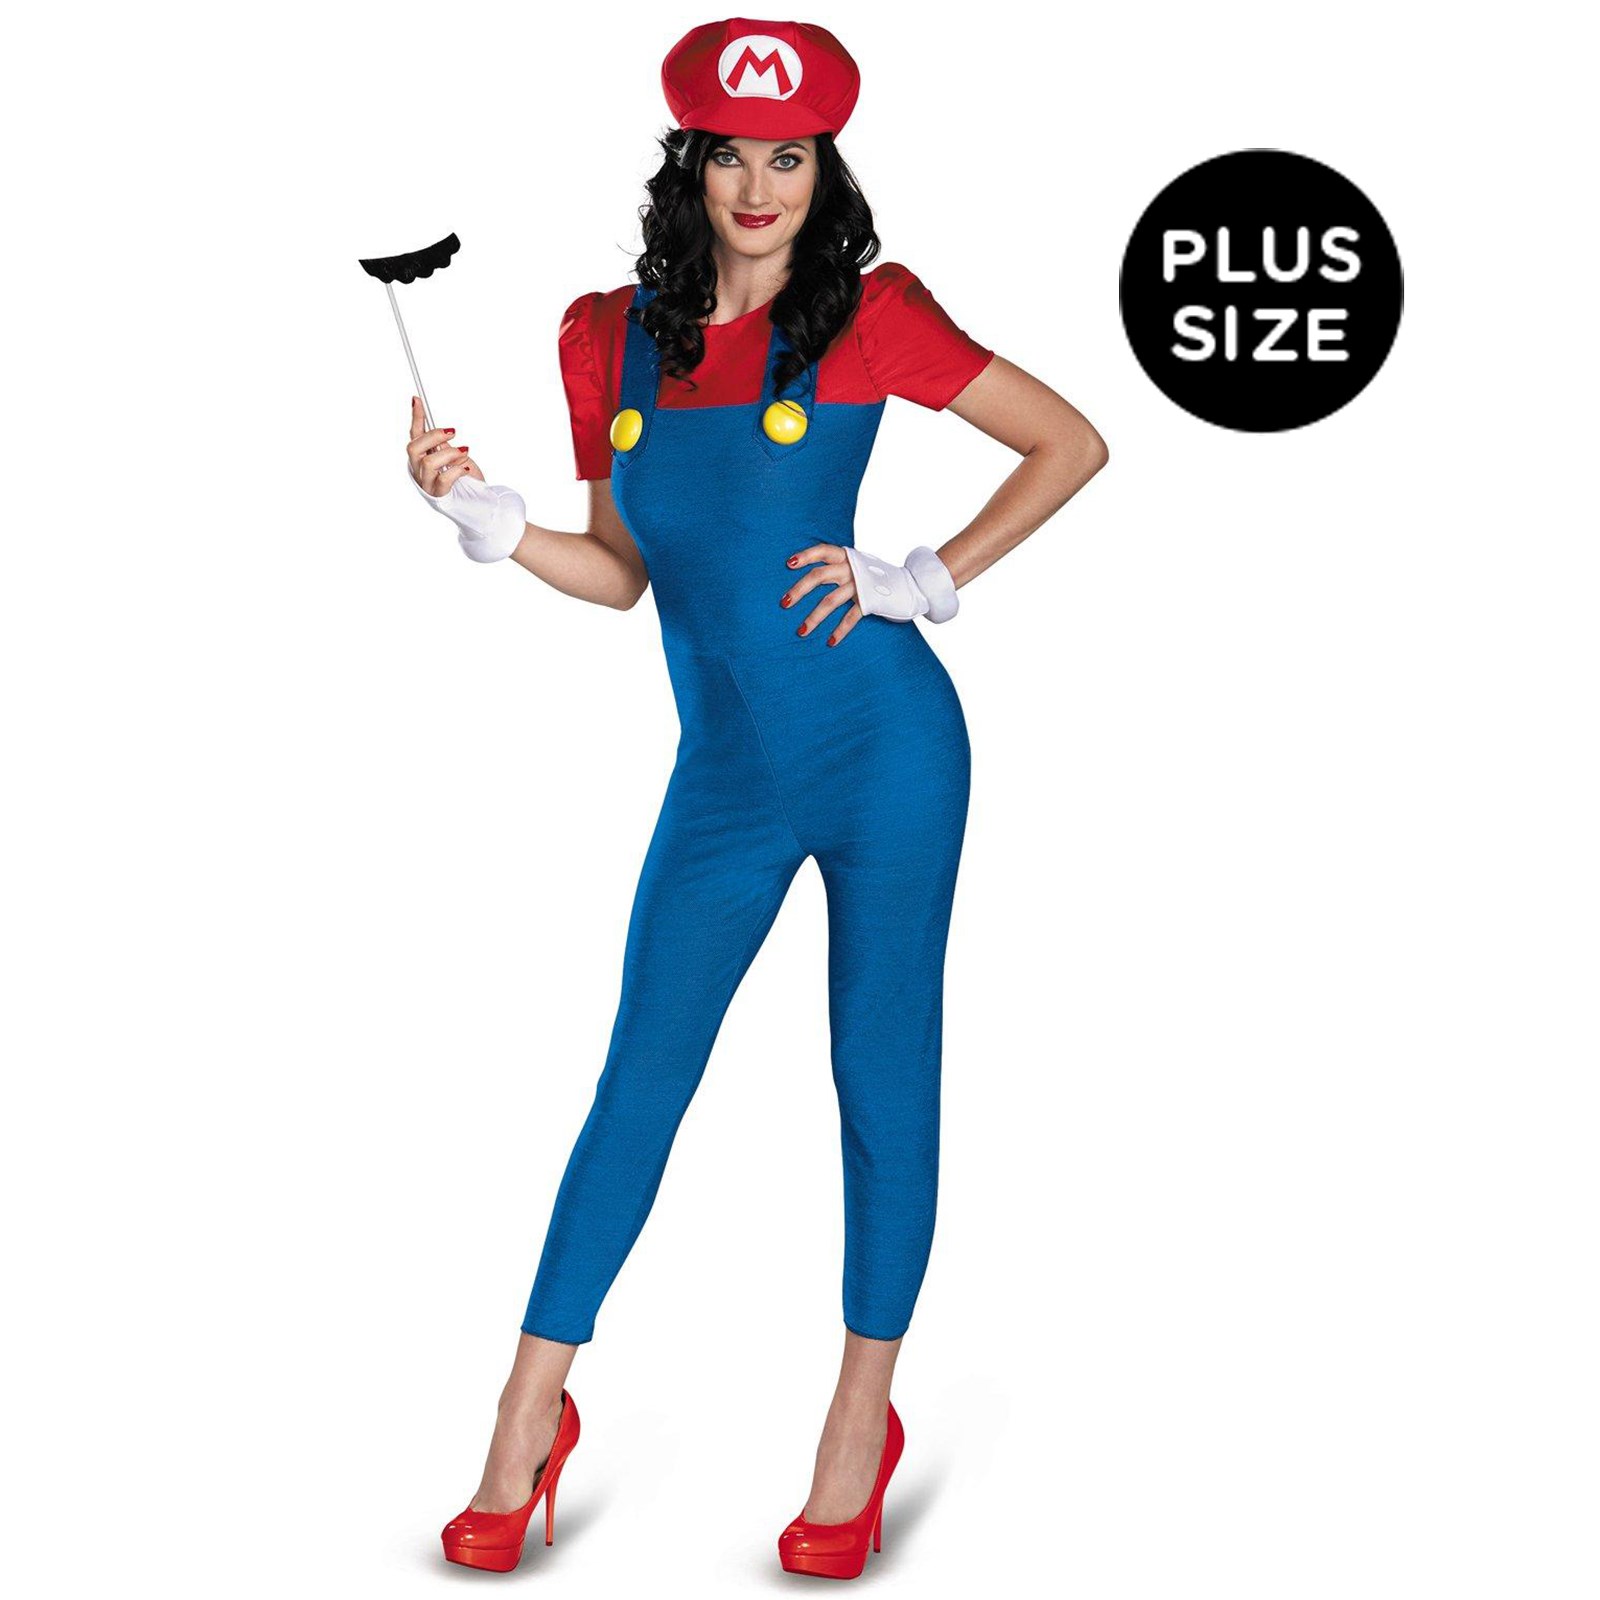 Super Mario Brothers – Deluxe Female Mario Plus Size Costume